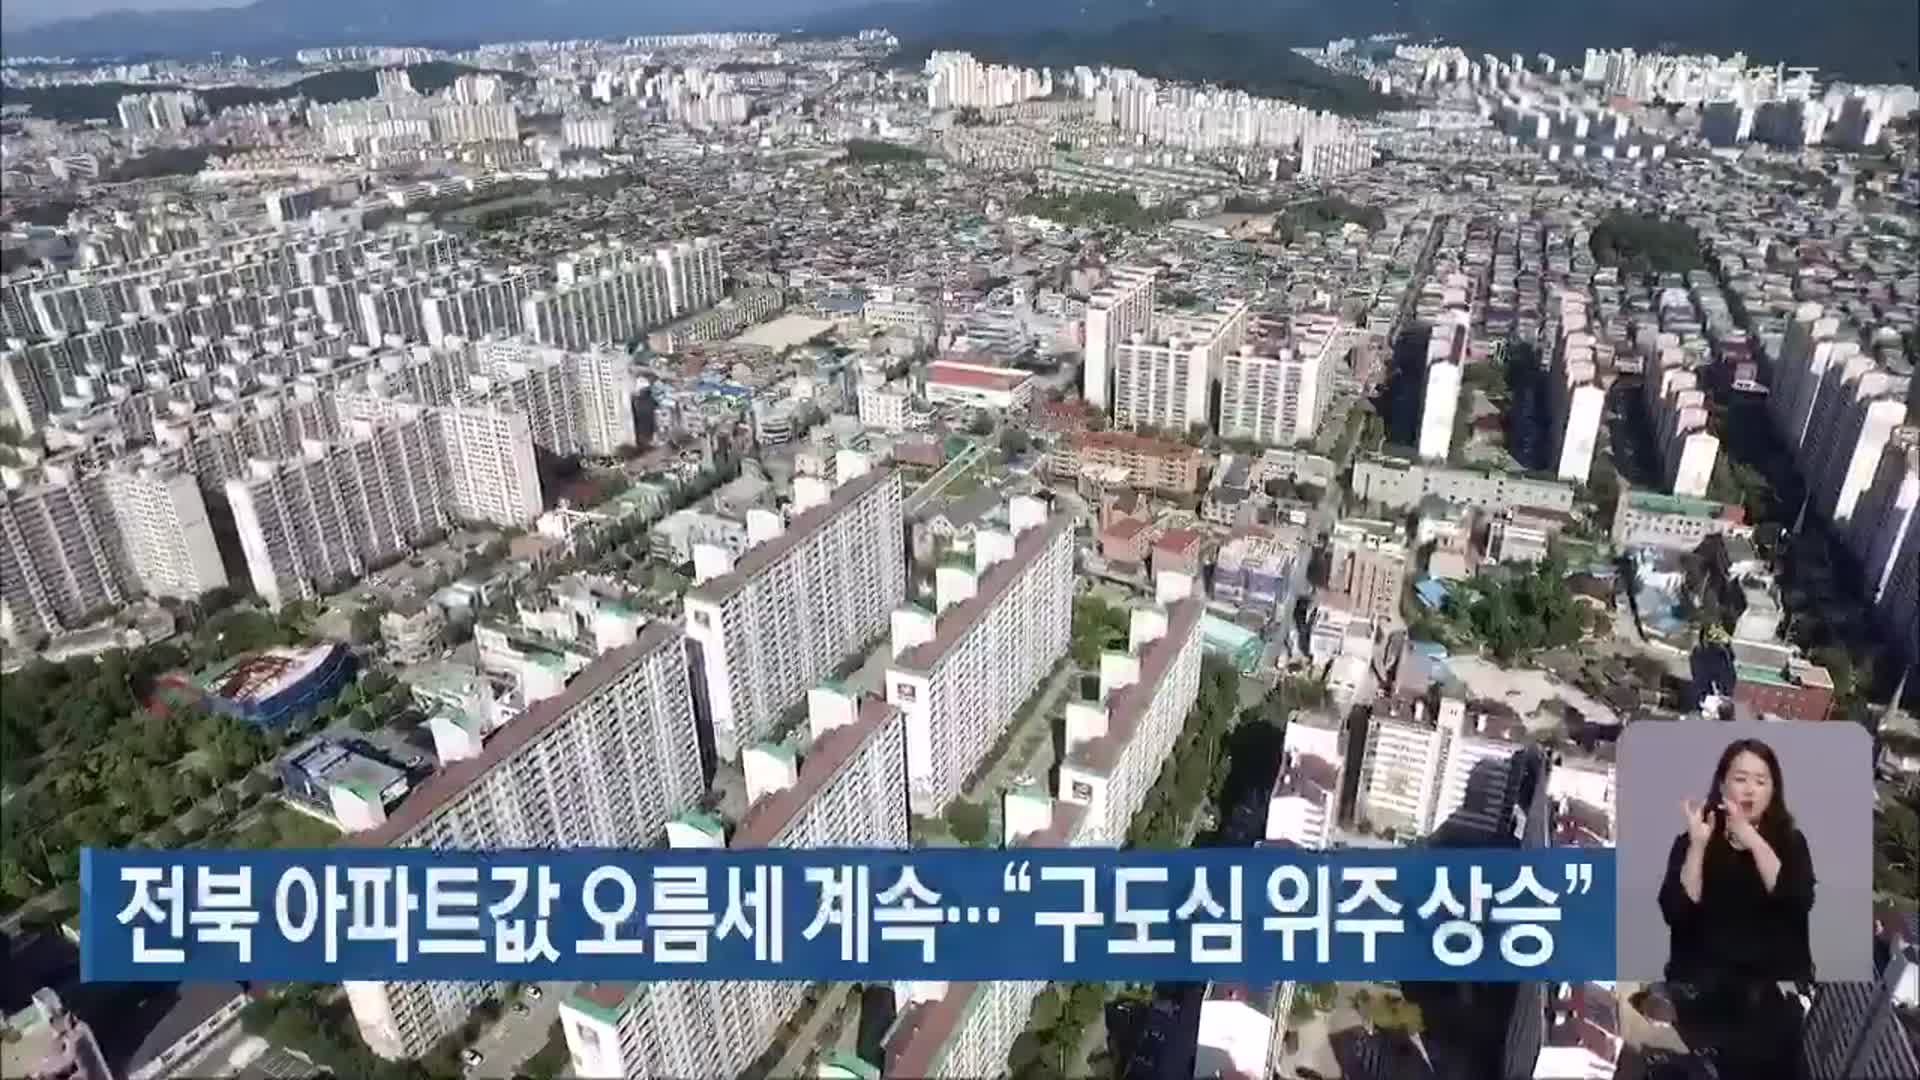 전북 아파트값 오름세 계속…“구도심 위주 상승”